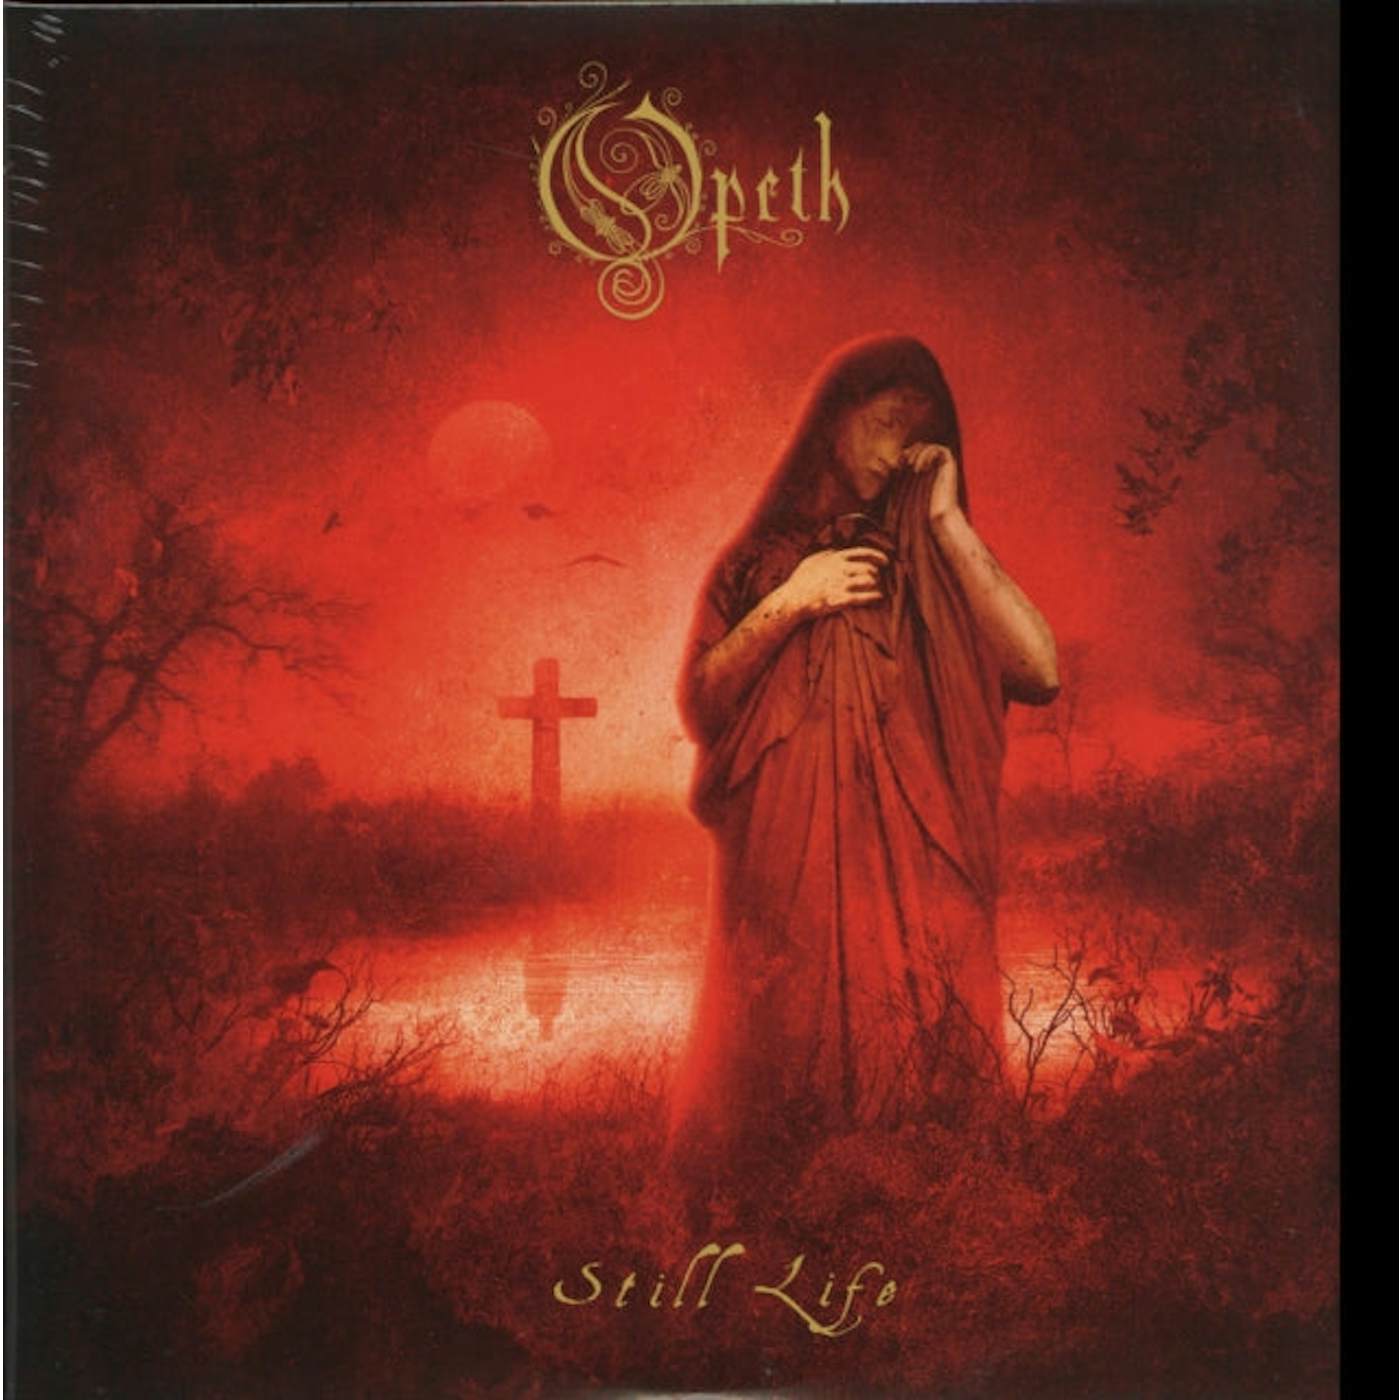 Opeth LP Vinyl Record - Still Life